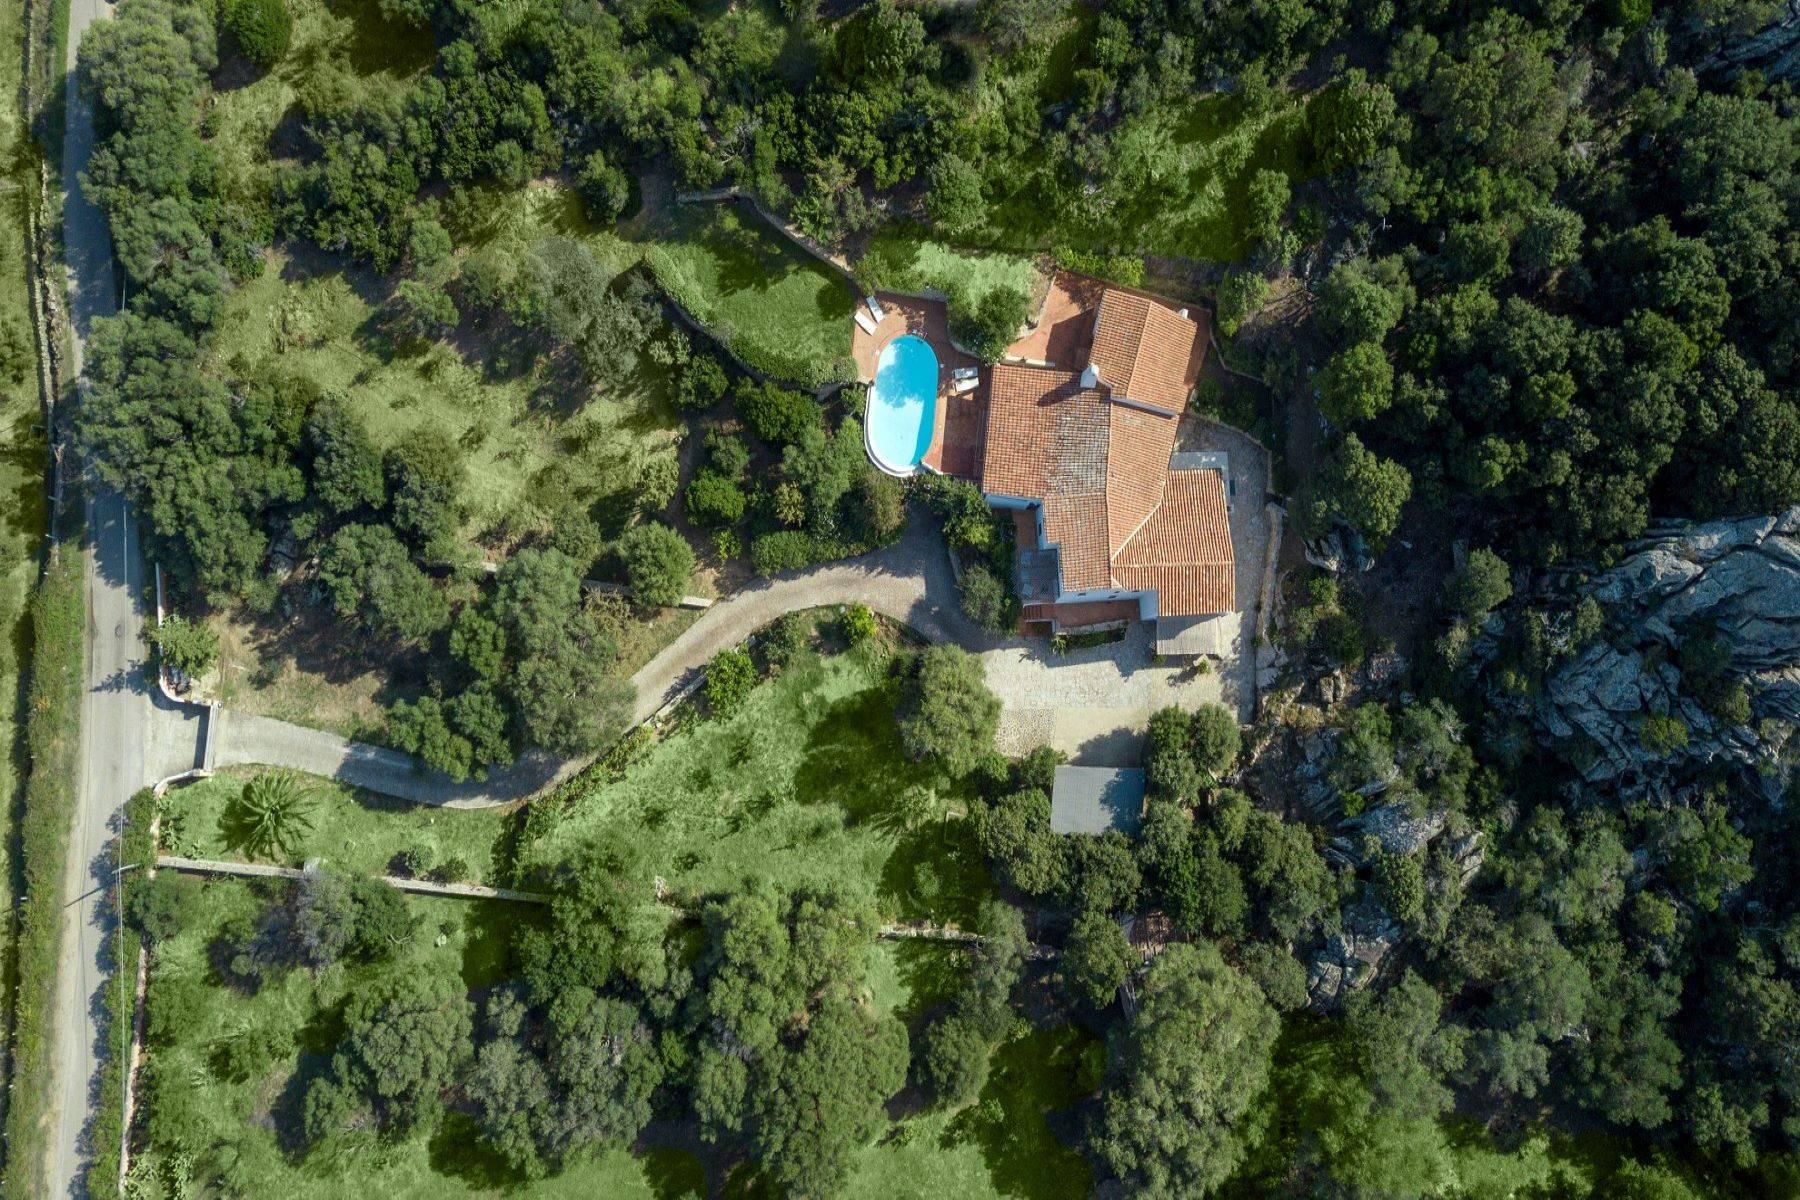 Villa con piscina immersa nella natura, a pochi minuti dalla Costa Smeralda - 11